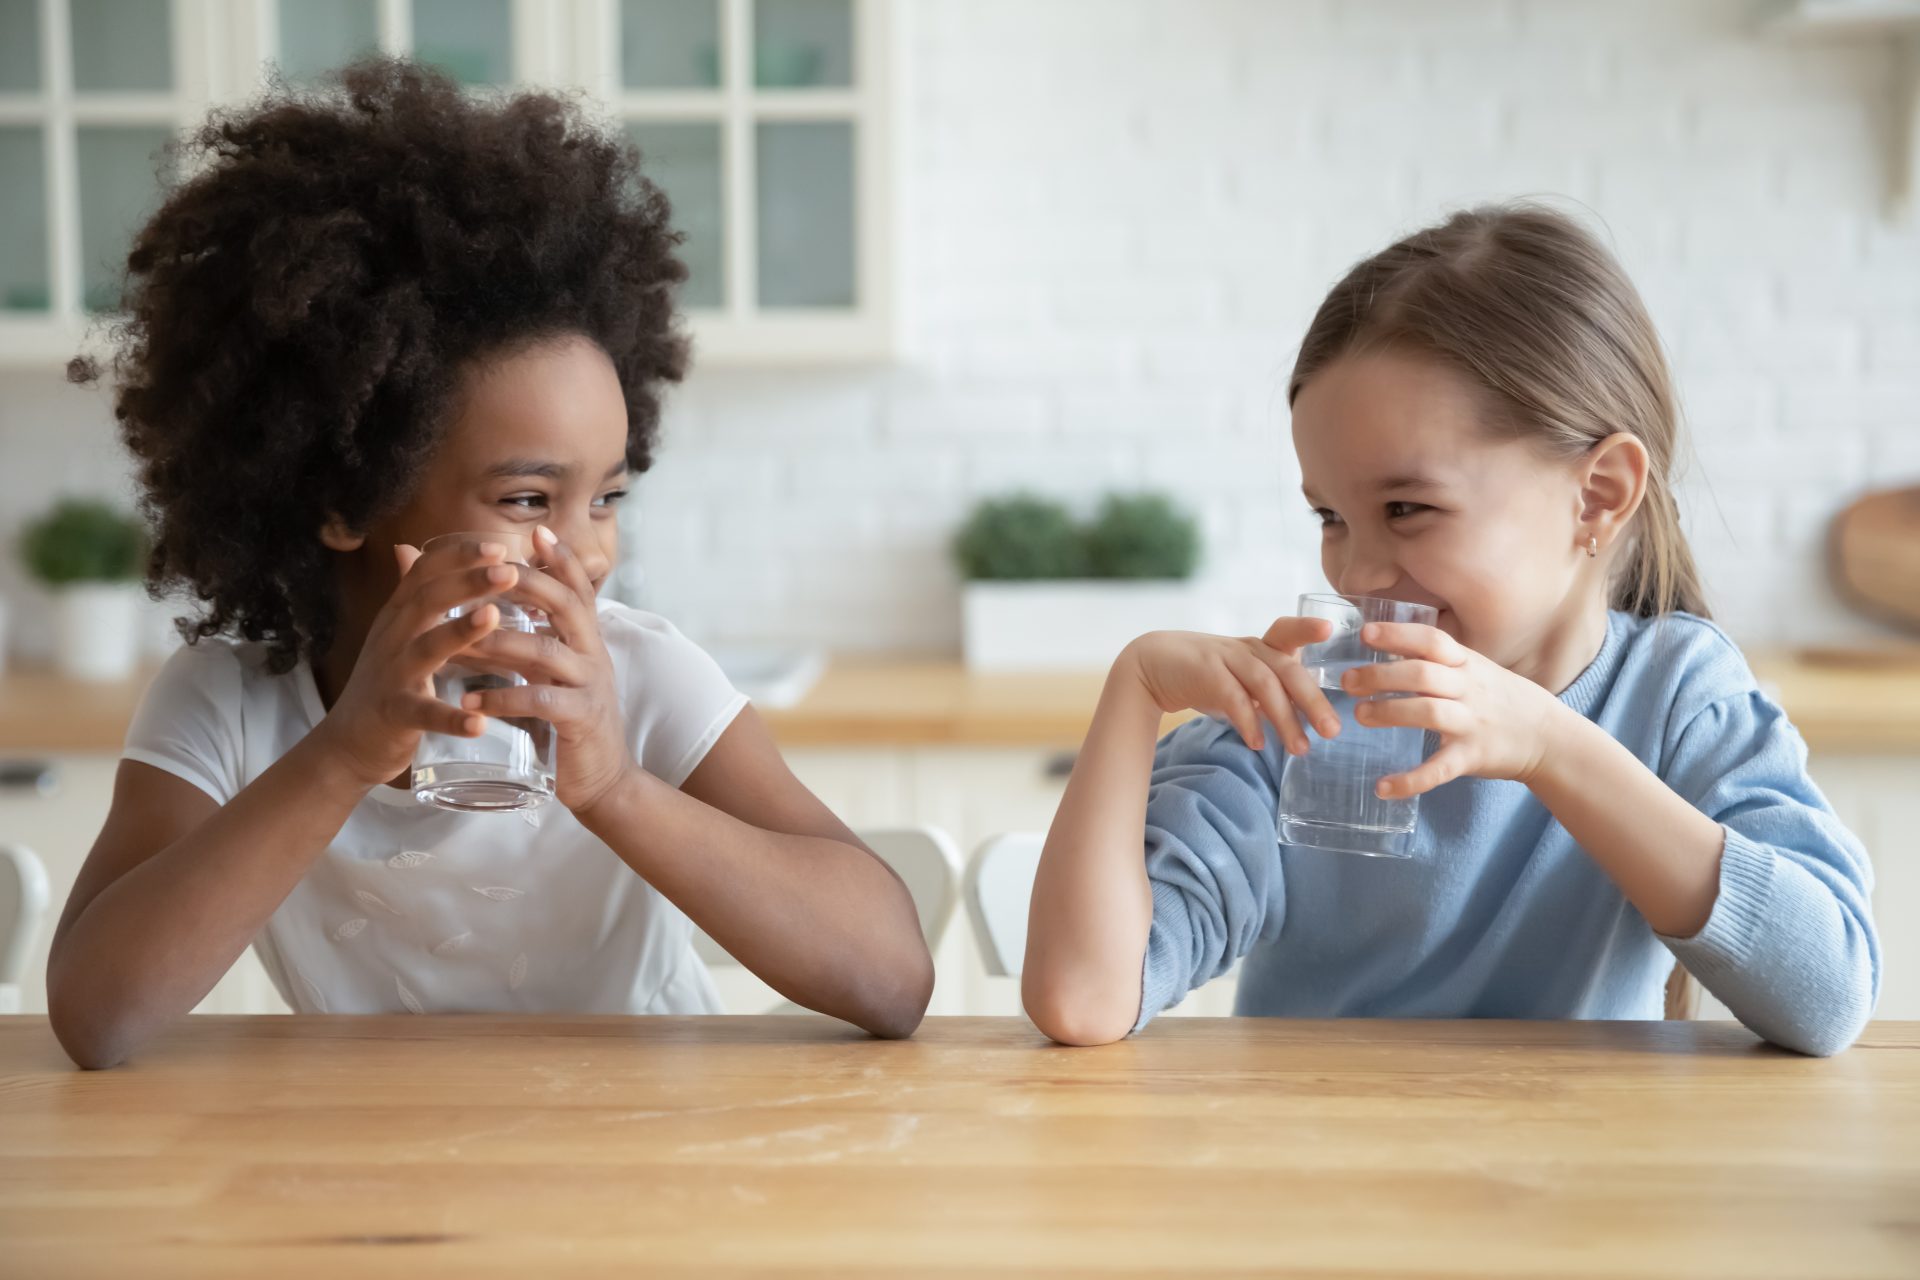 5 Tips om kids voldoende water te laten drinken in de zomer